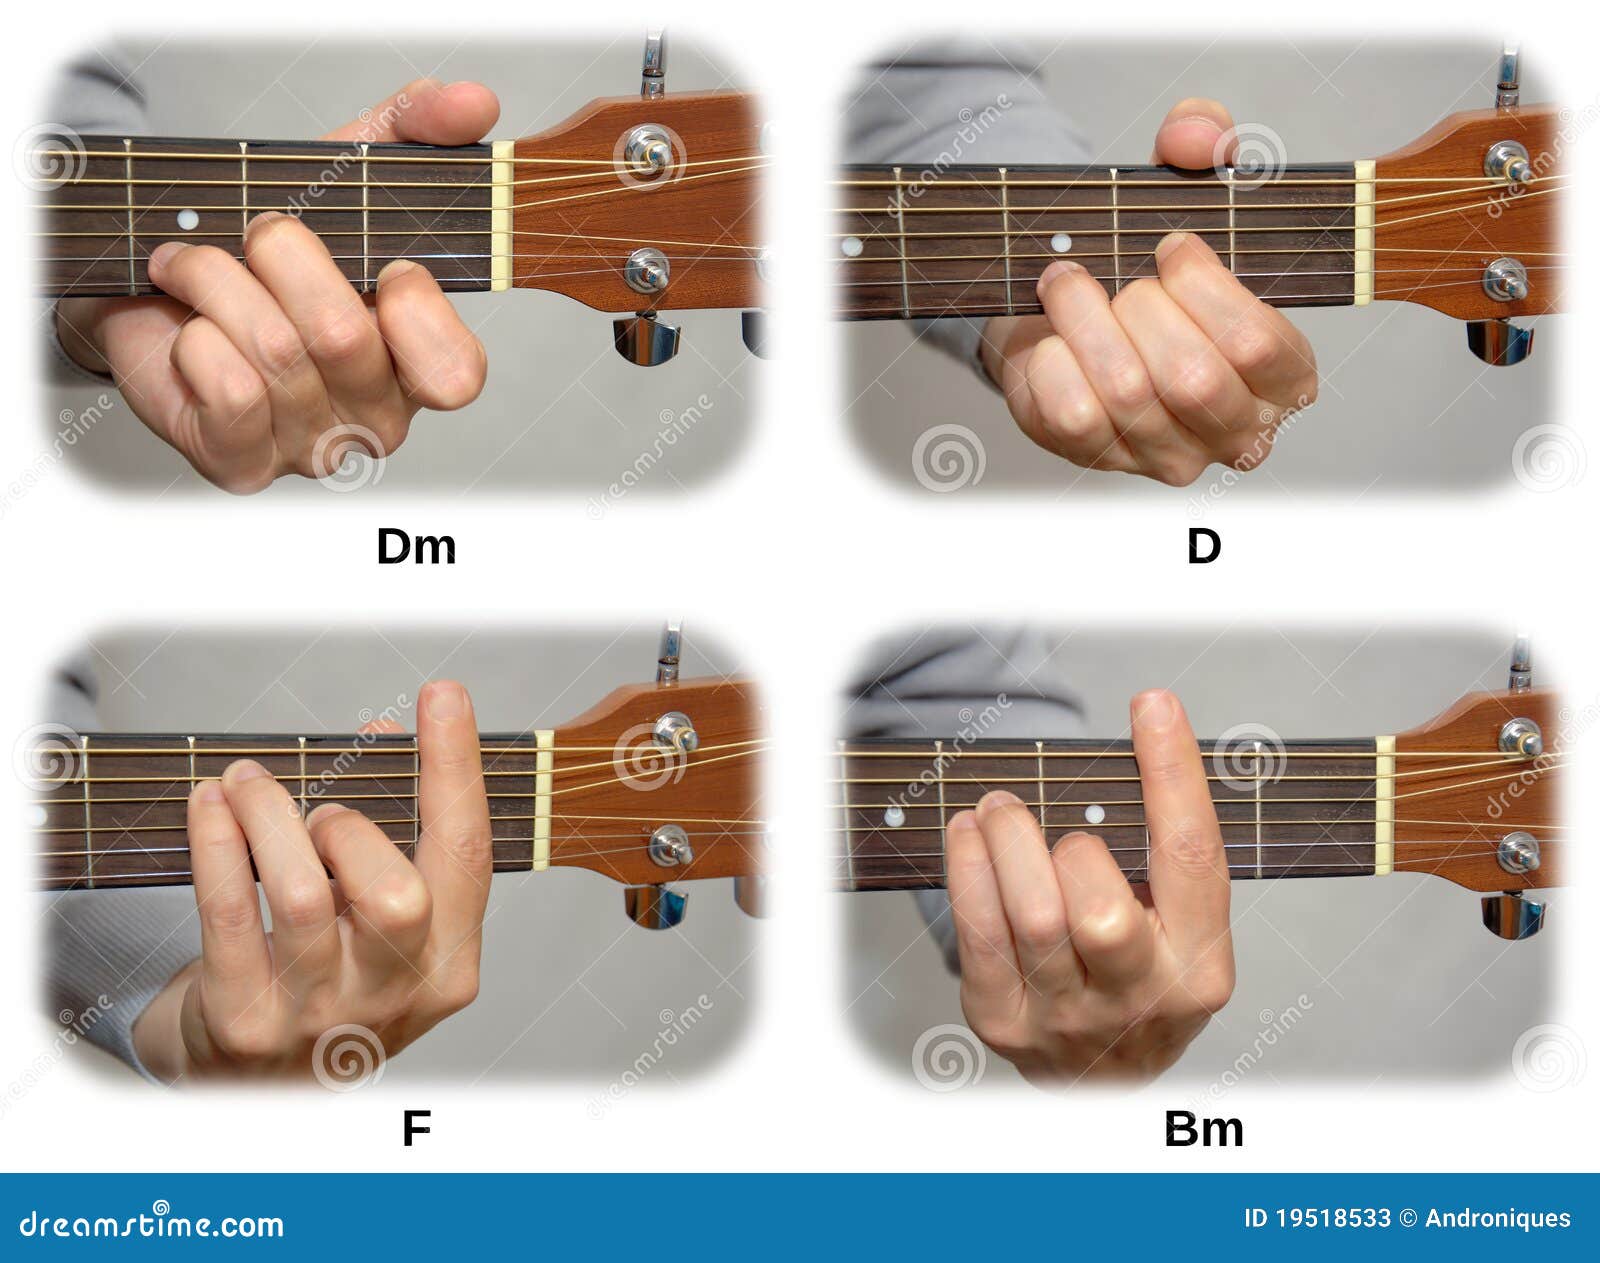 Где можно играть песни. Гитара 7 струн Аккорд BM. Аккорд дм на гитаре 6 струн пальцы. DM БАРРЭ Аккорд на гитаре. Аккорд DM на грифе гитаре 6 струн варианты.